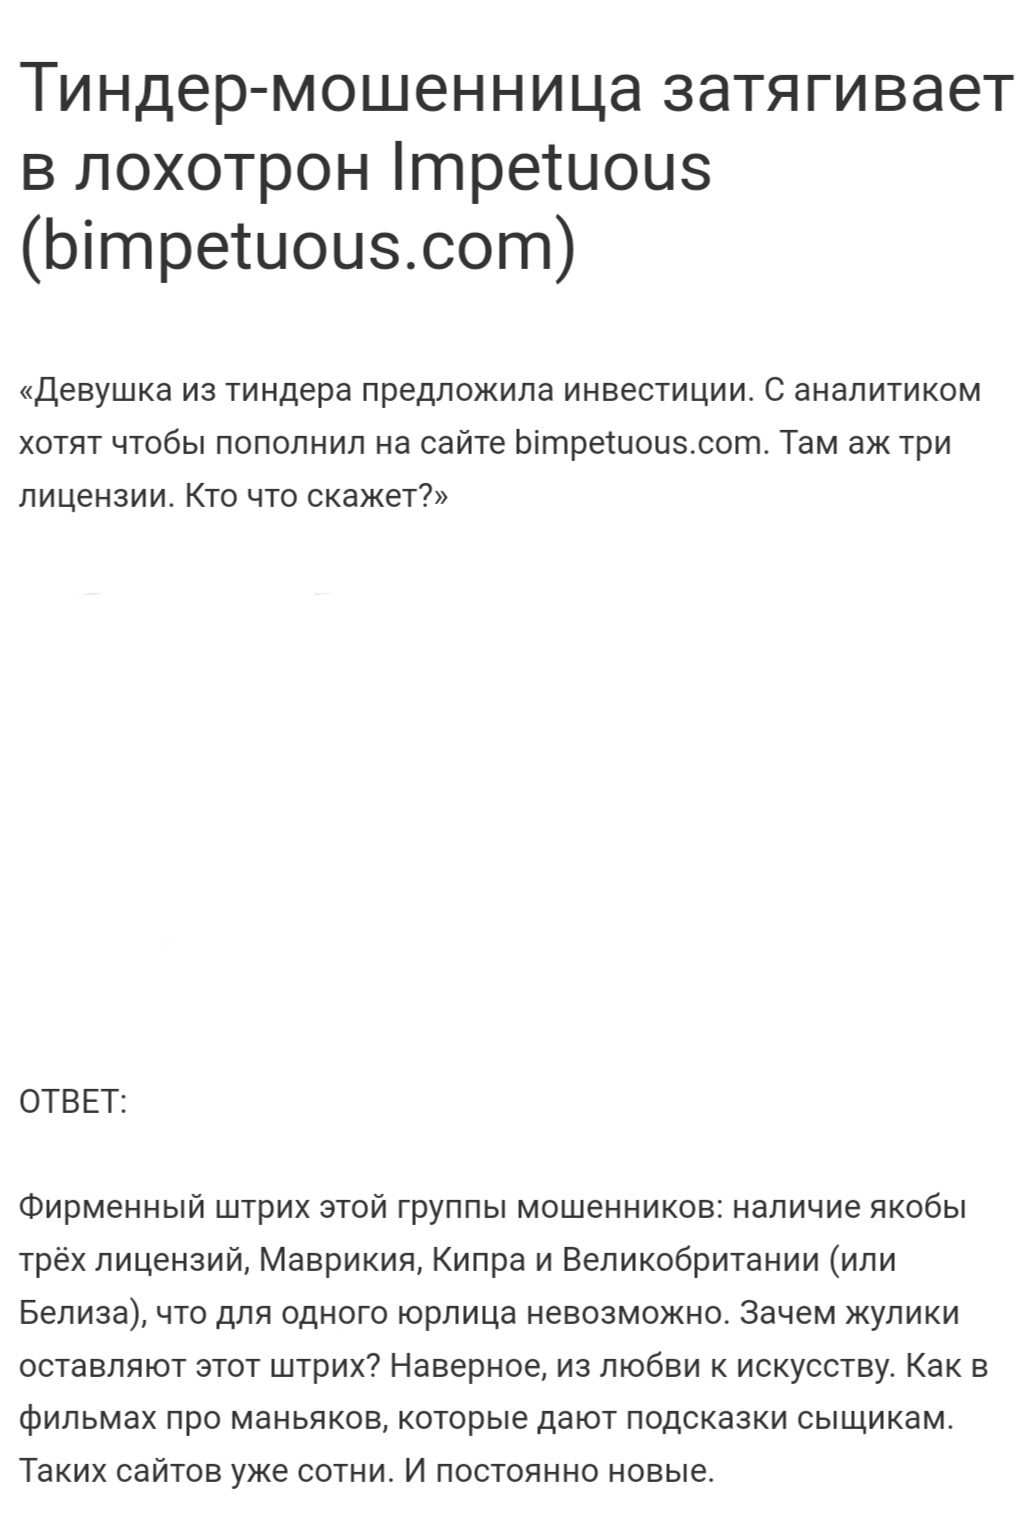 Bimpetuous.com отзывы